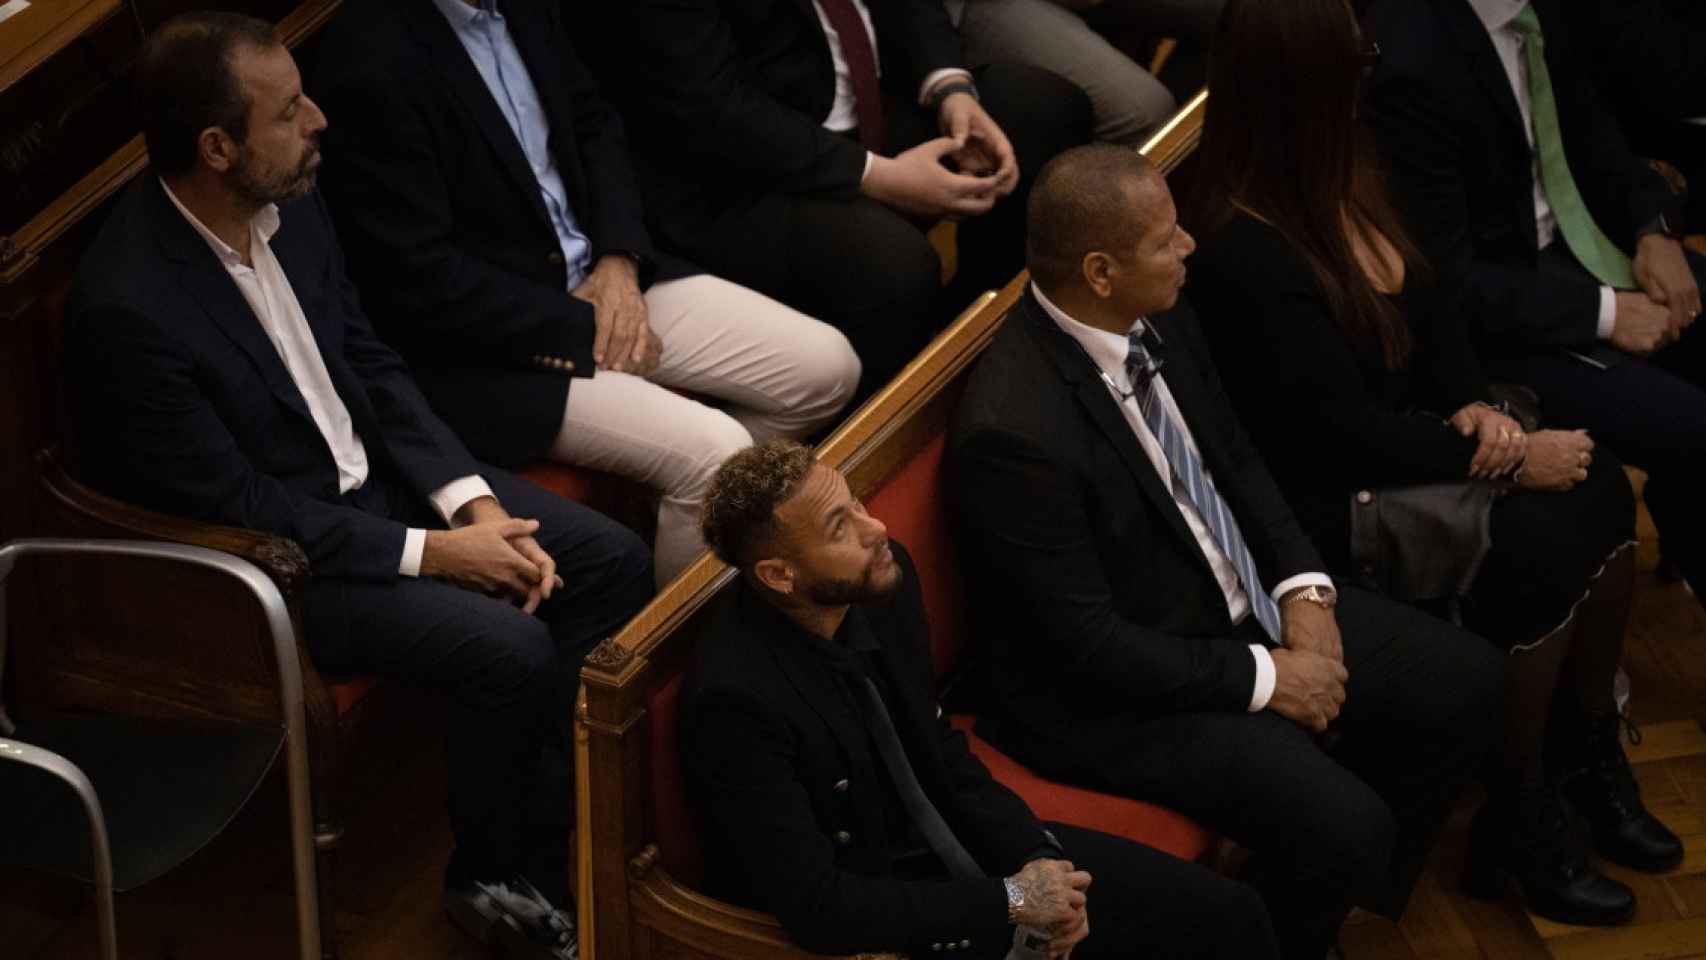 El padre de Neymar Jr. junto a su hijo en el banquillo de la Audiencia Nacional, acusados de un presunto delito de corrupción entre particulares por su fichaje con el Barça / DAVOD ZORRAKINO - EUROPA PRESS